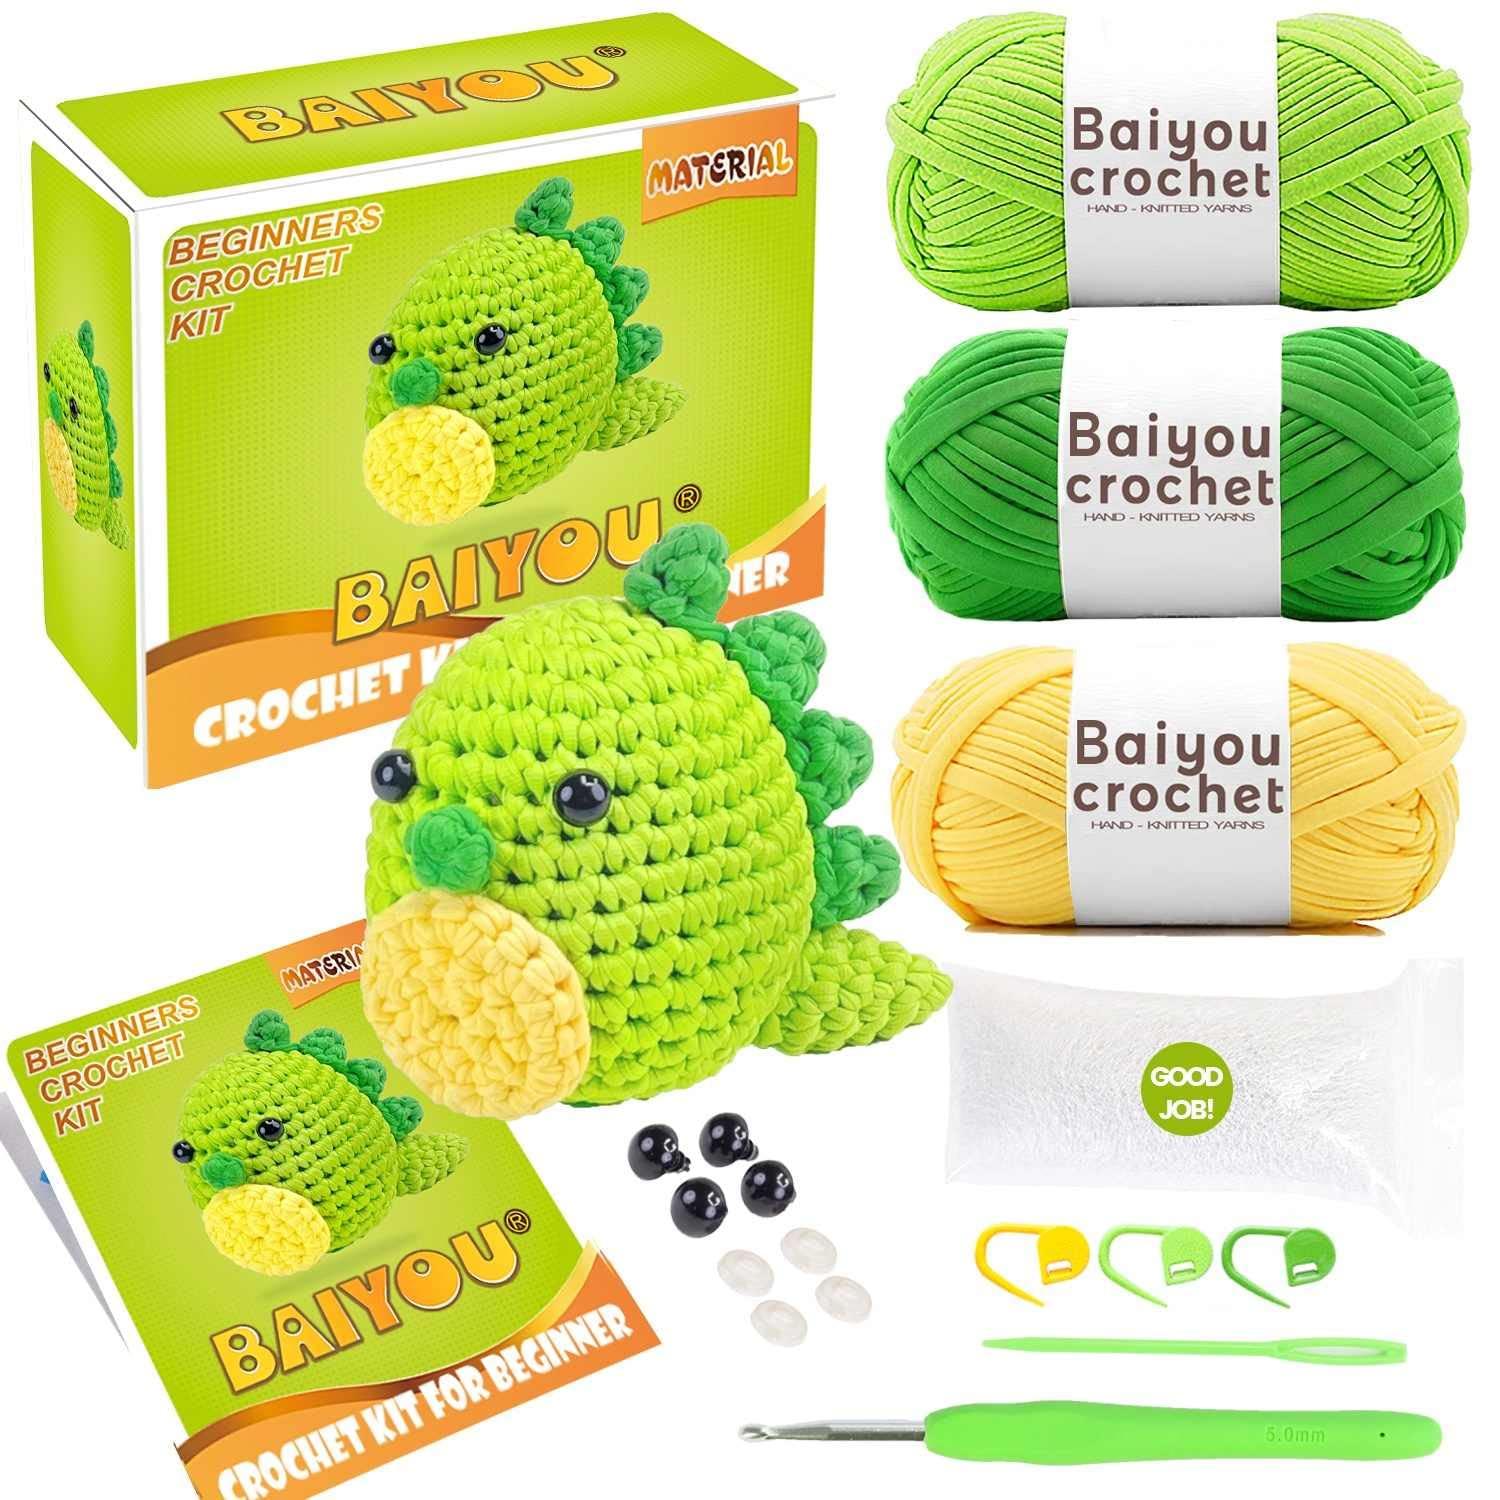 Crochet Kit for Beginners, Beginner Crochet Kit for Adults and